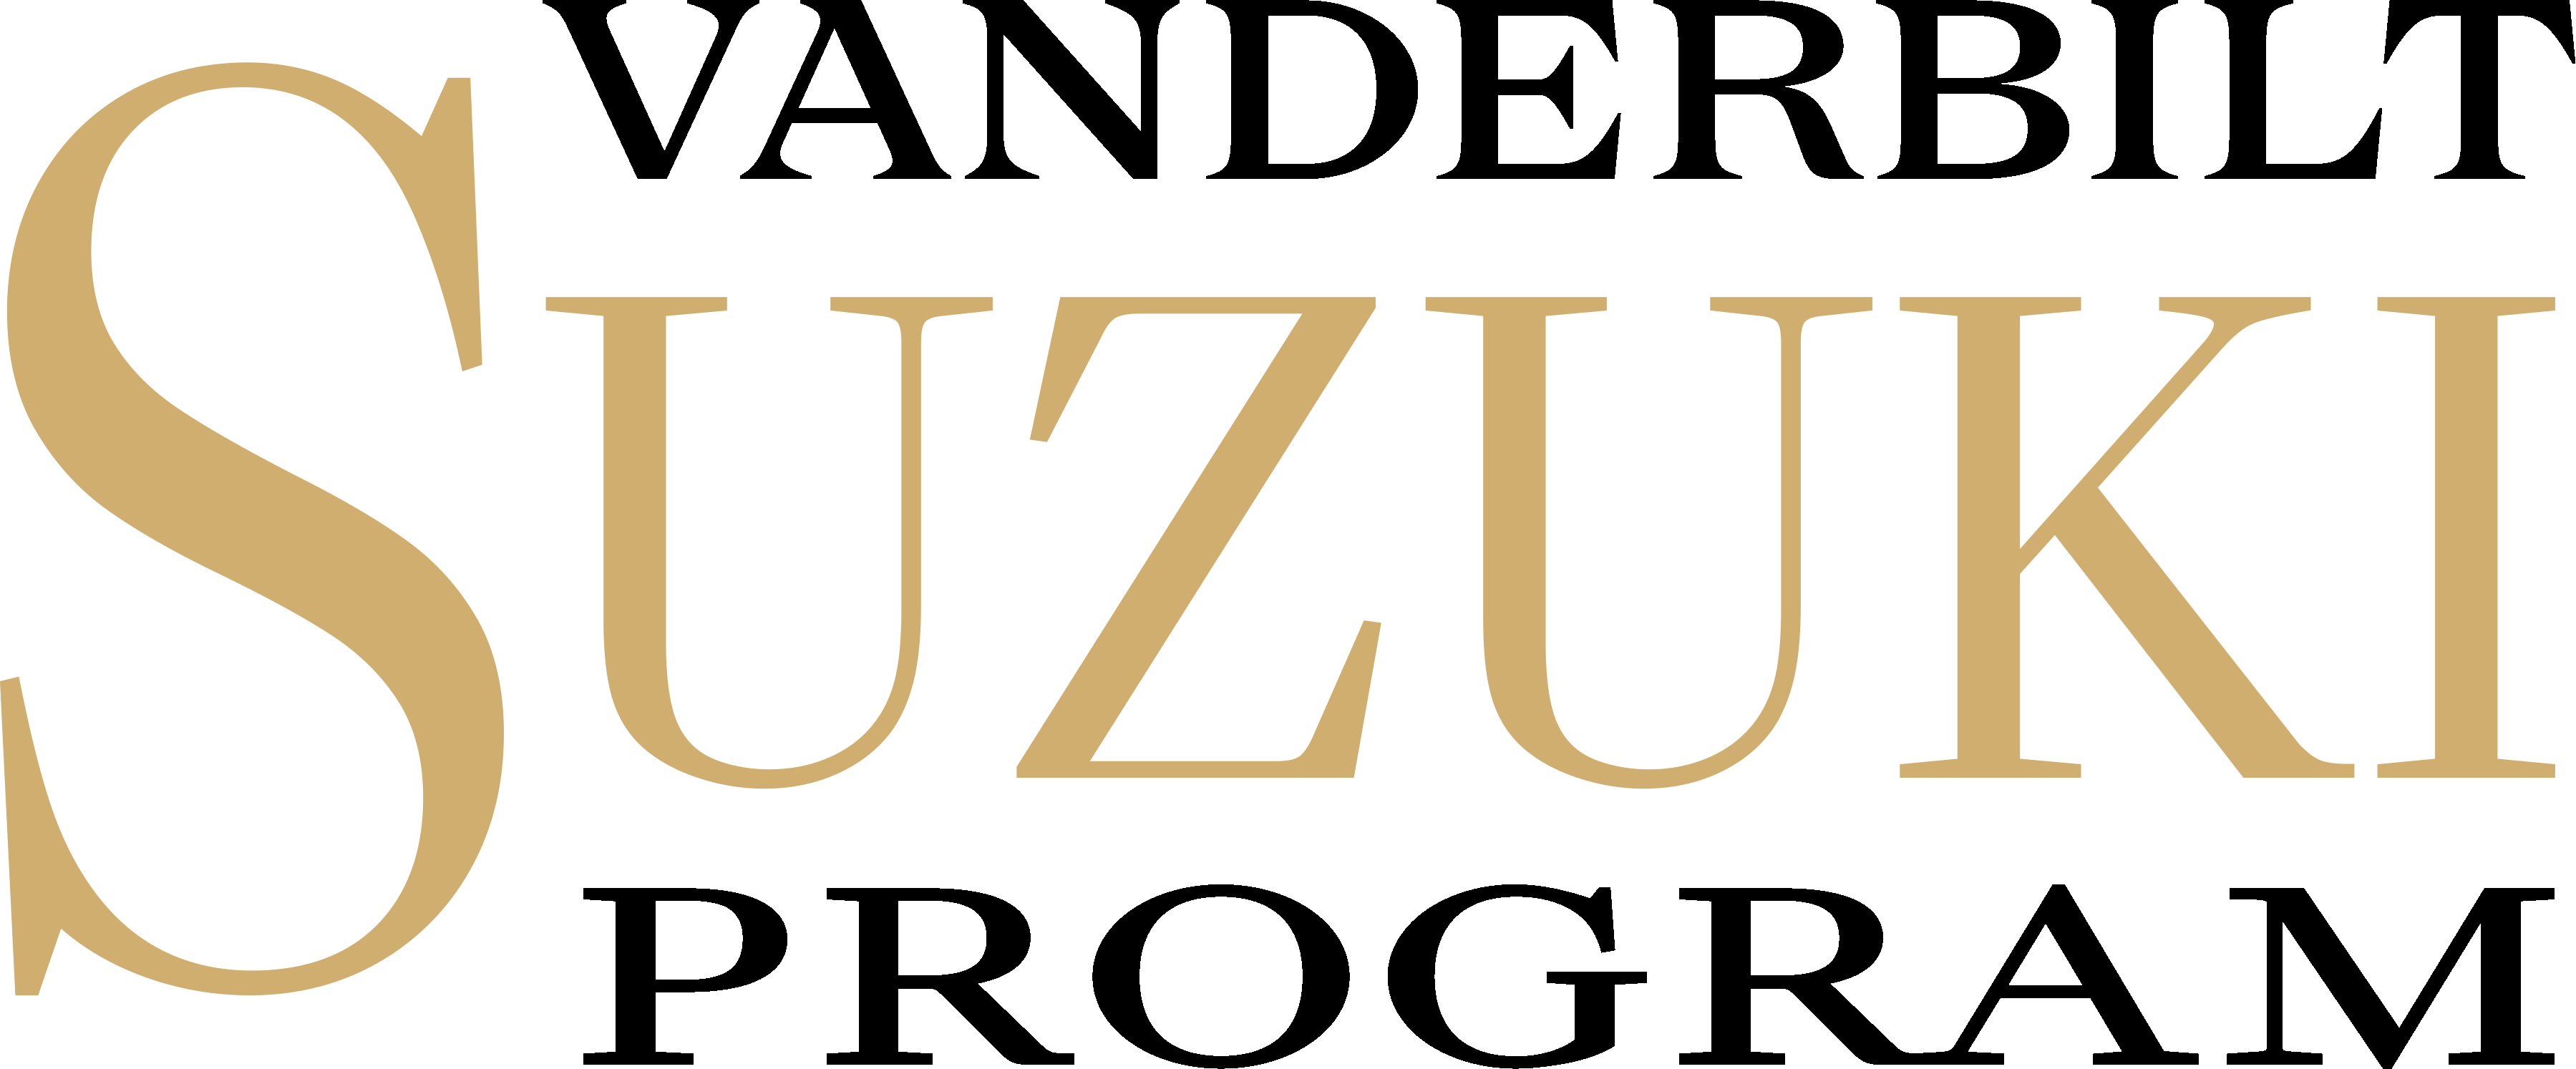 Vanderbilt Suzuki Program